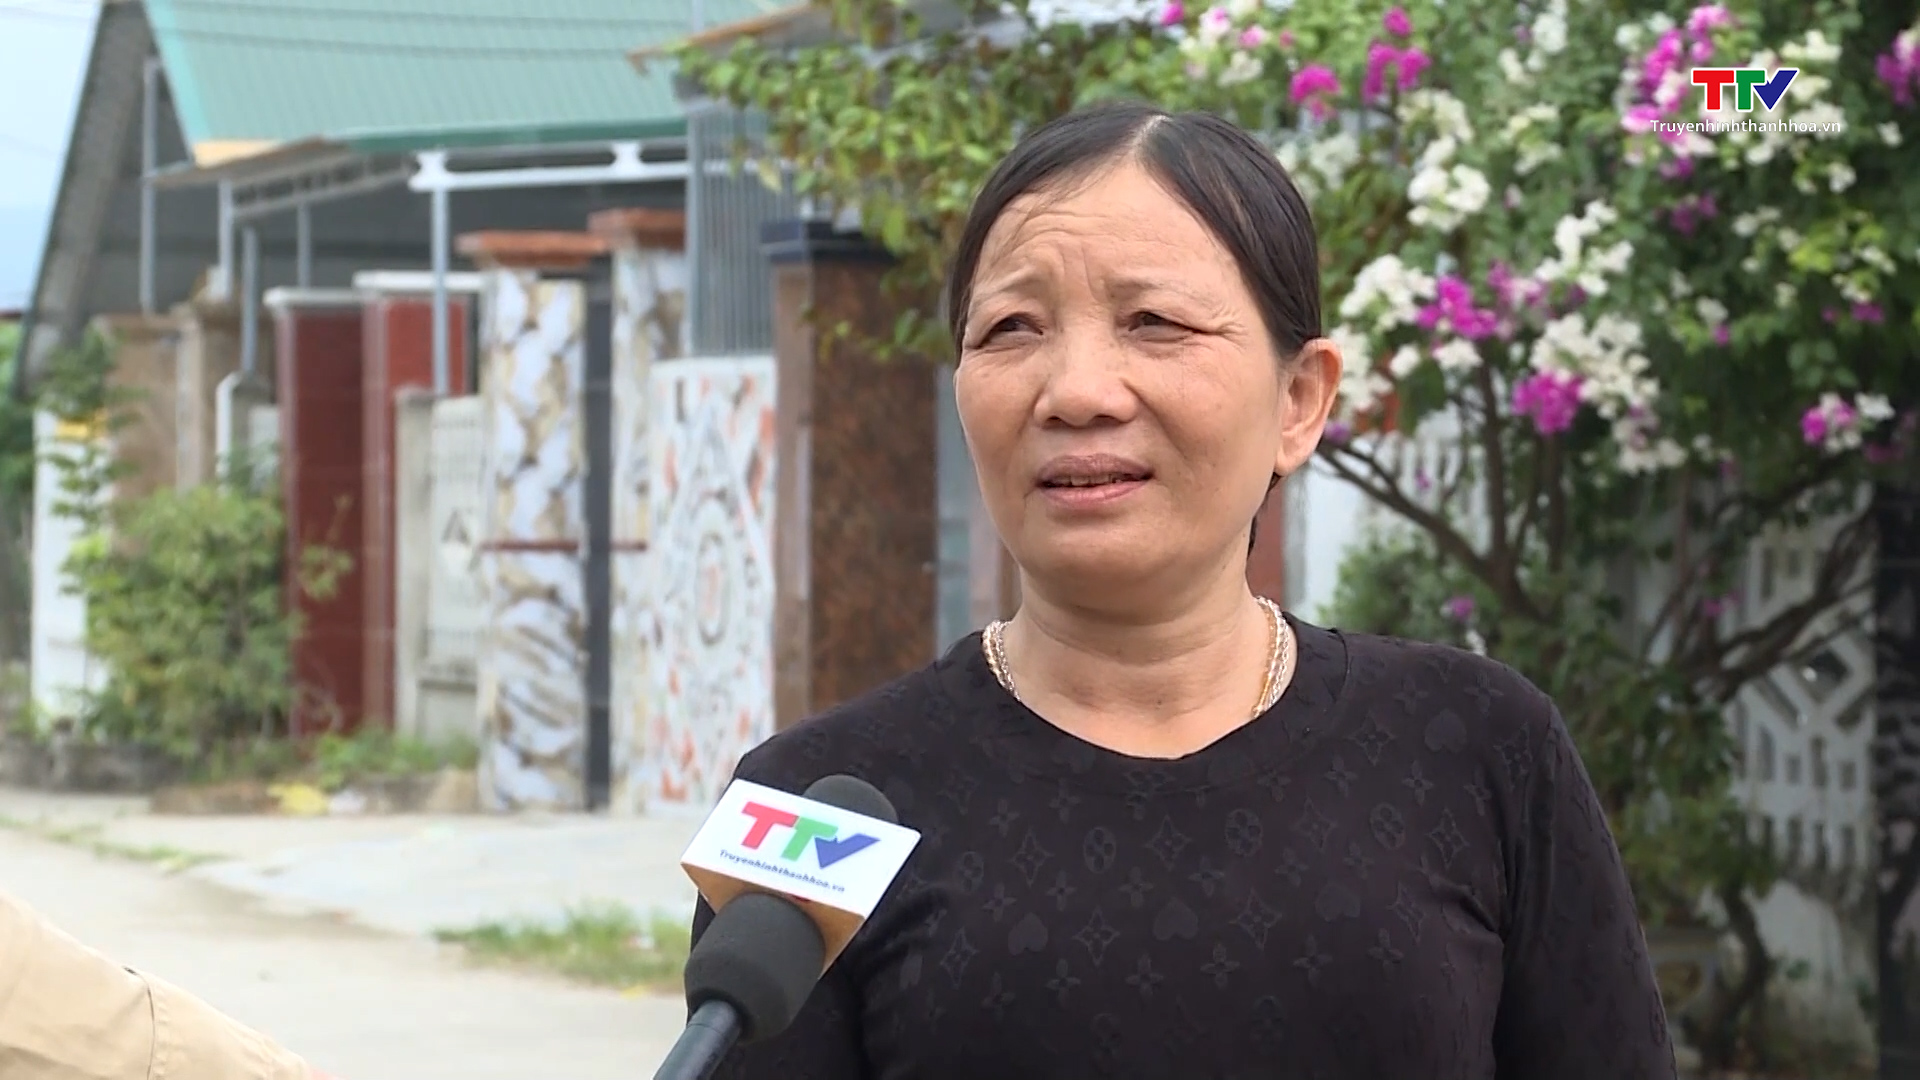 Huyện Yên Định cơ bản hoàn thành việc cấp đất, hỗ trợ làm nhà ở cho các hộ đồng bào trên sông - Ảnh 2.